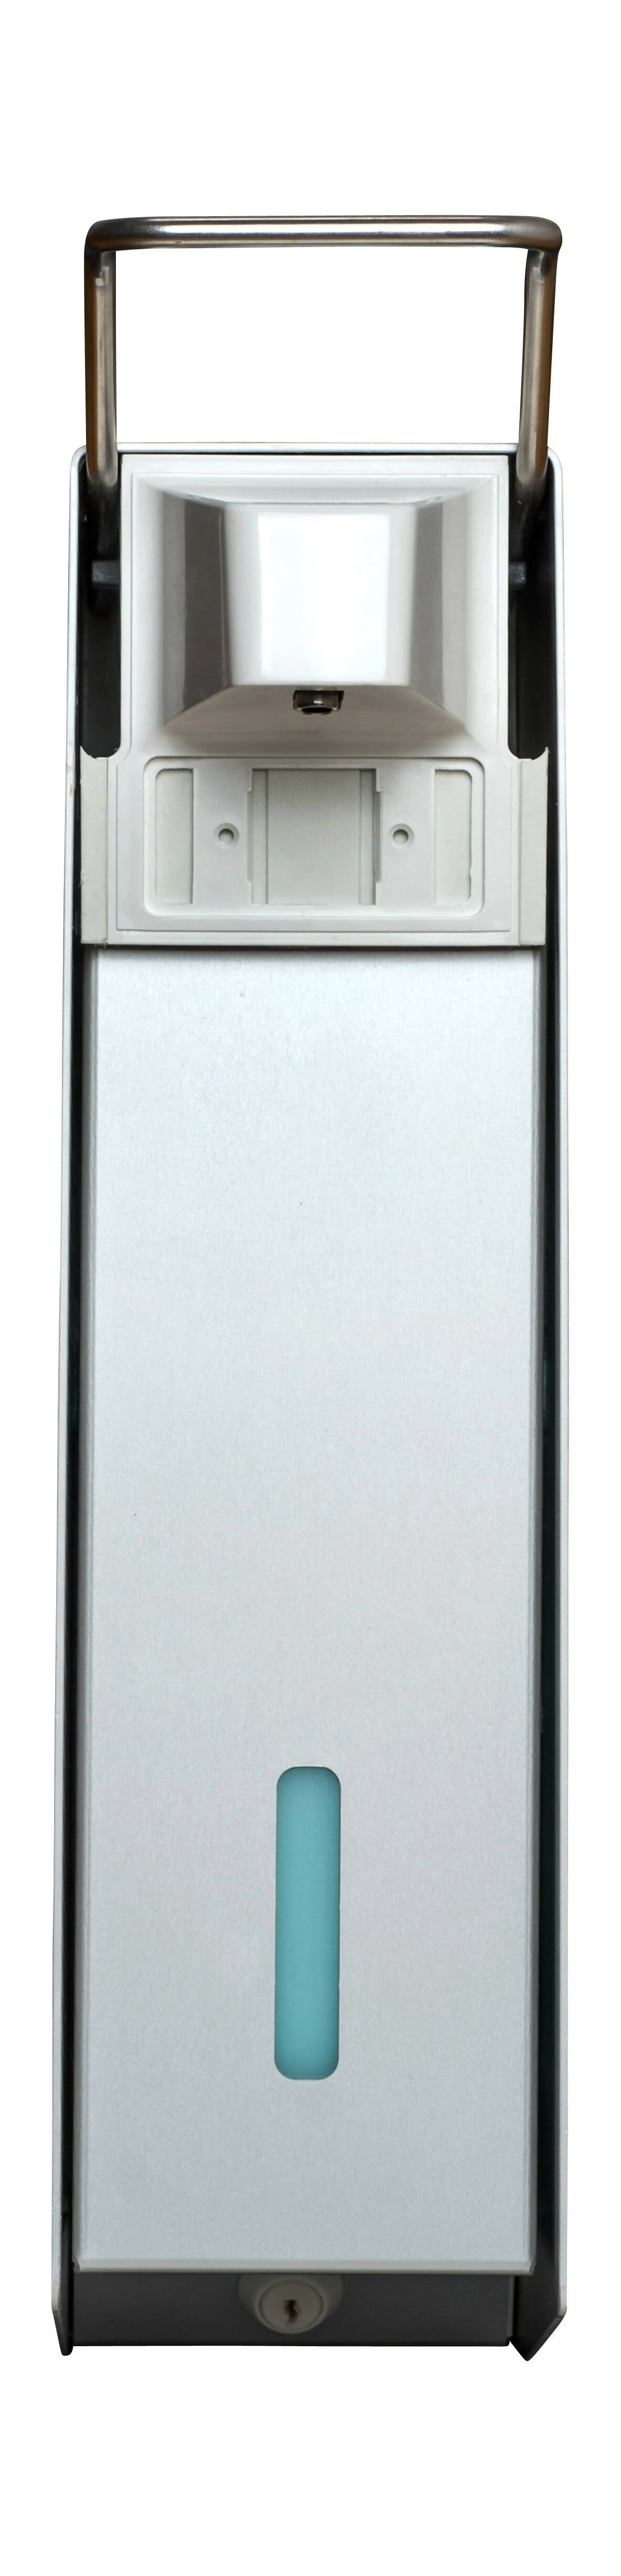 SORIFA – Robuster, ergonomischer, abschließbarer Wandspender aus Metall für 2,5L-Flasche der Marke SORIFA – Für Gele und Flüssigseifen. - 0